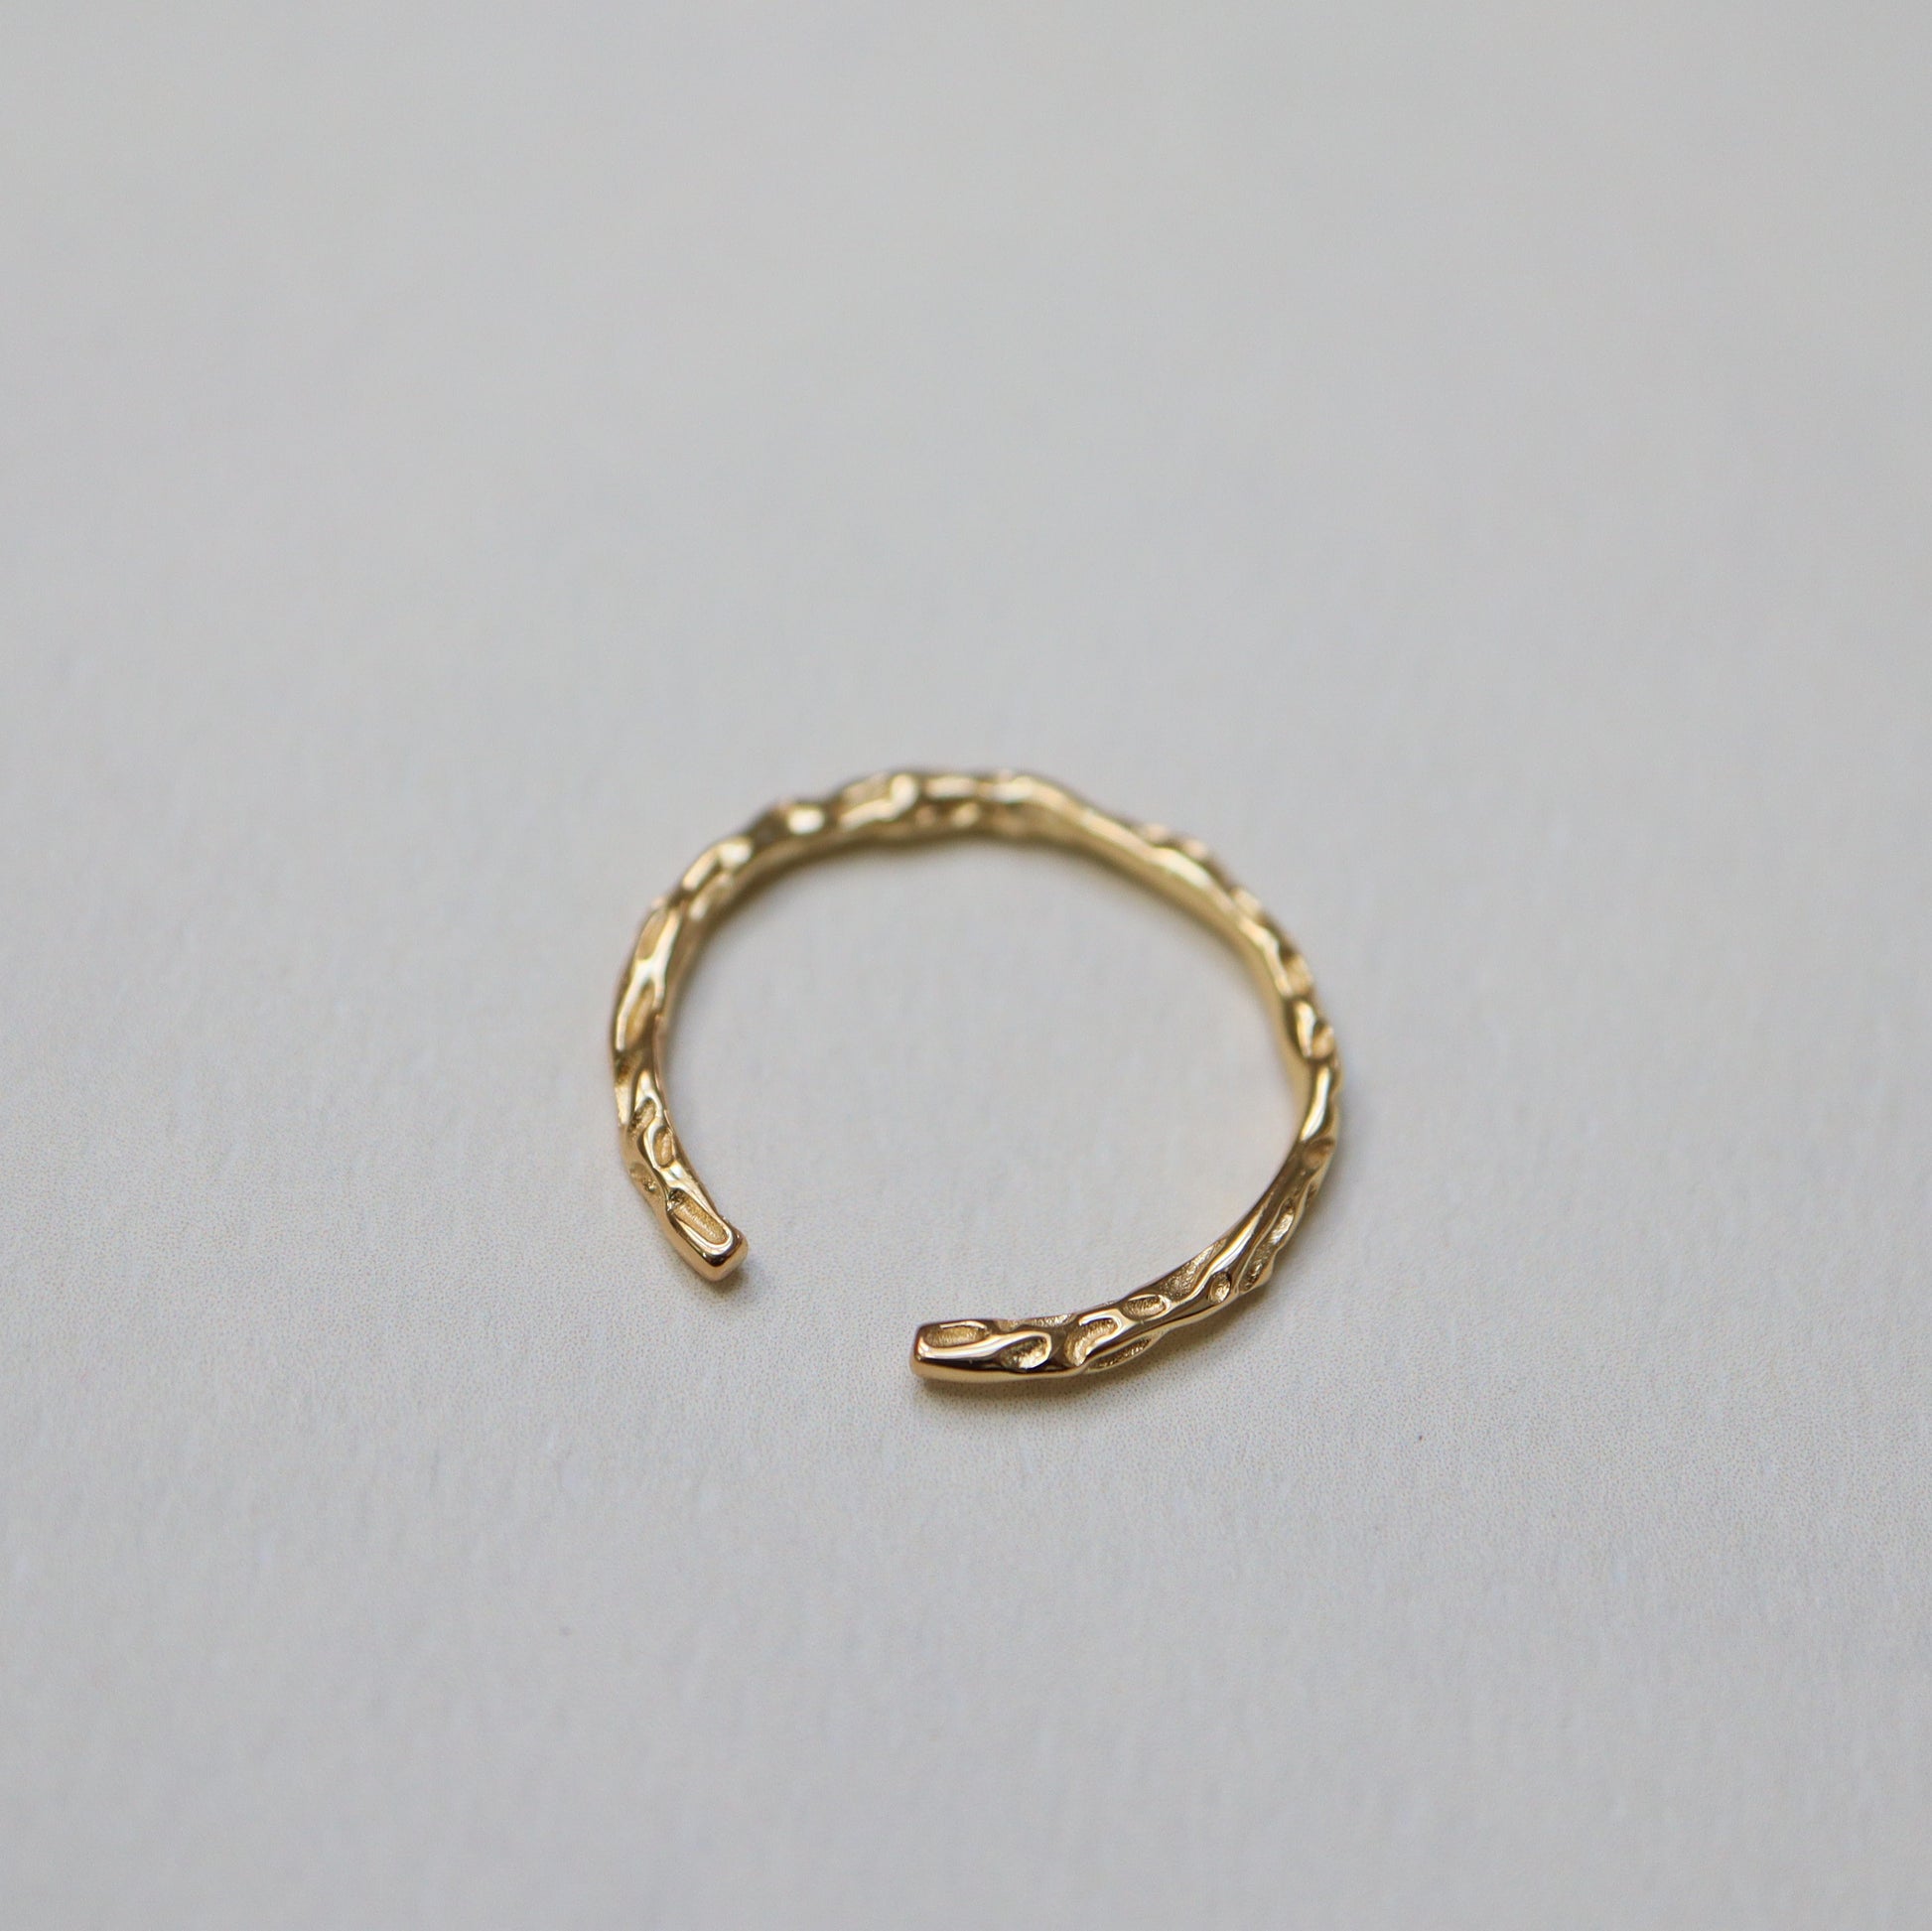 Irregular Gold Band Ring Abu Dhabi UAE